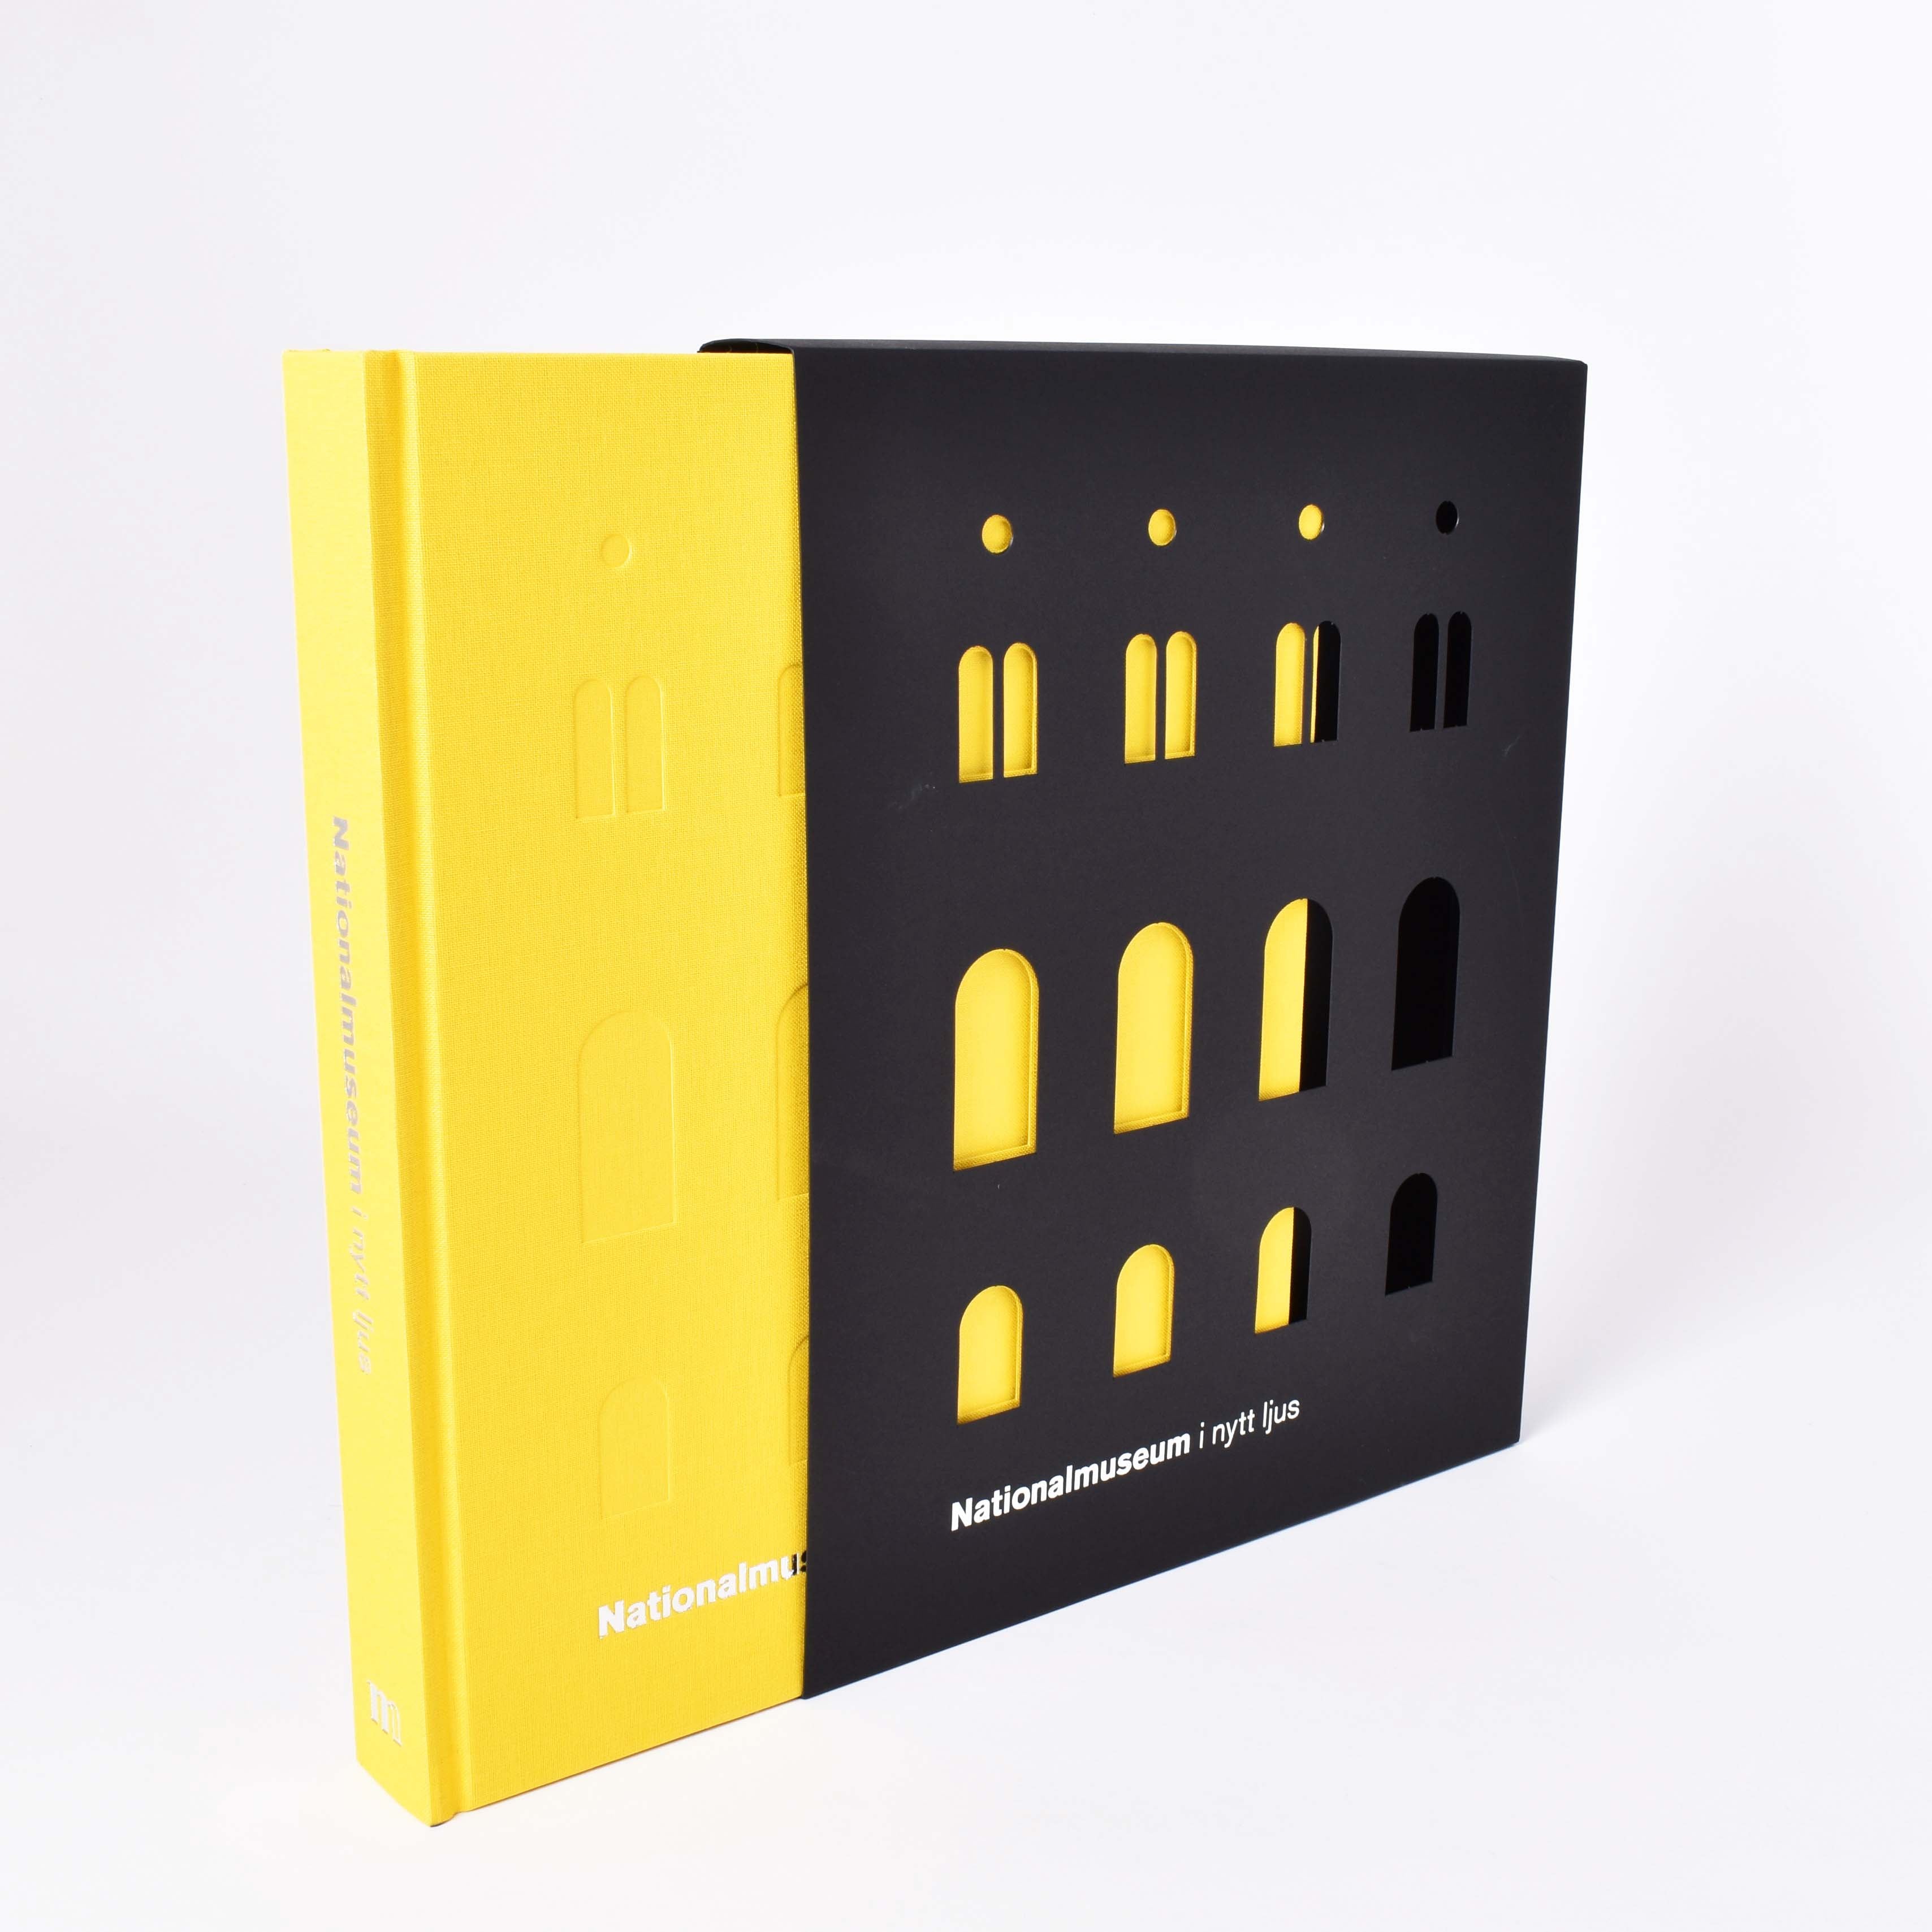 nationalmuseum i nytt ljus boken med gult omslag och fodral i svart